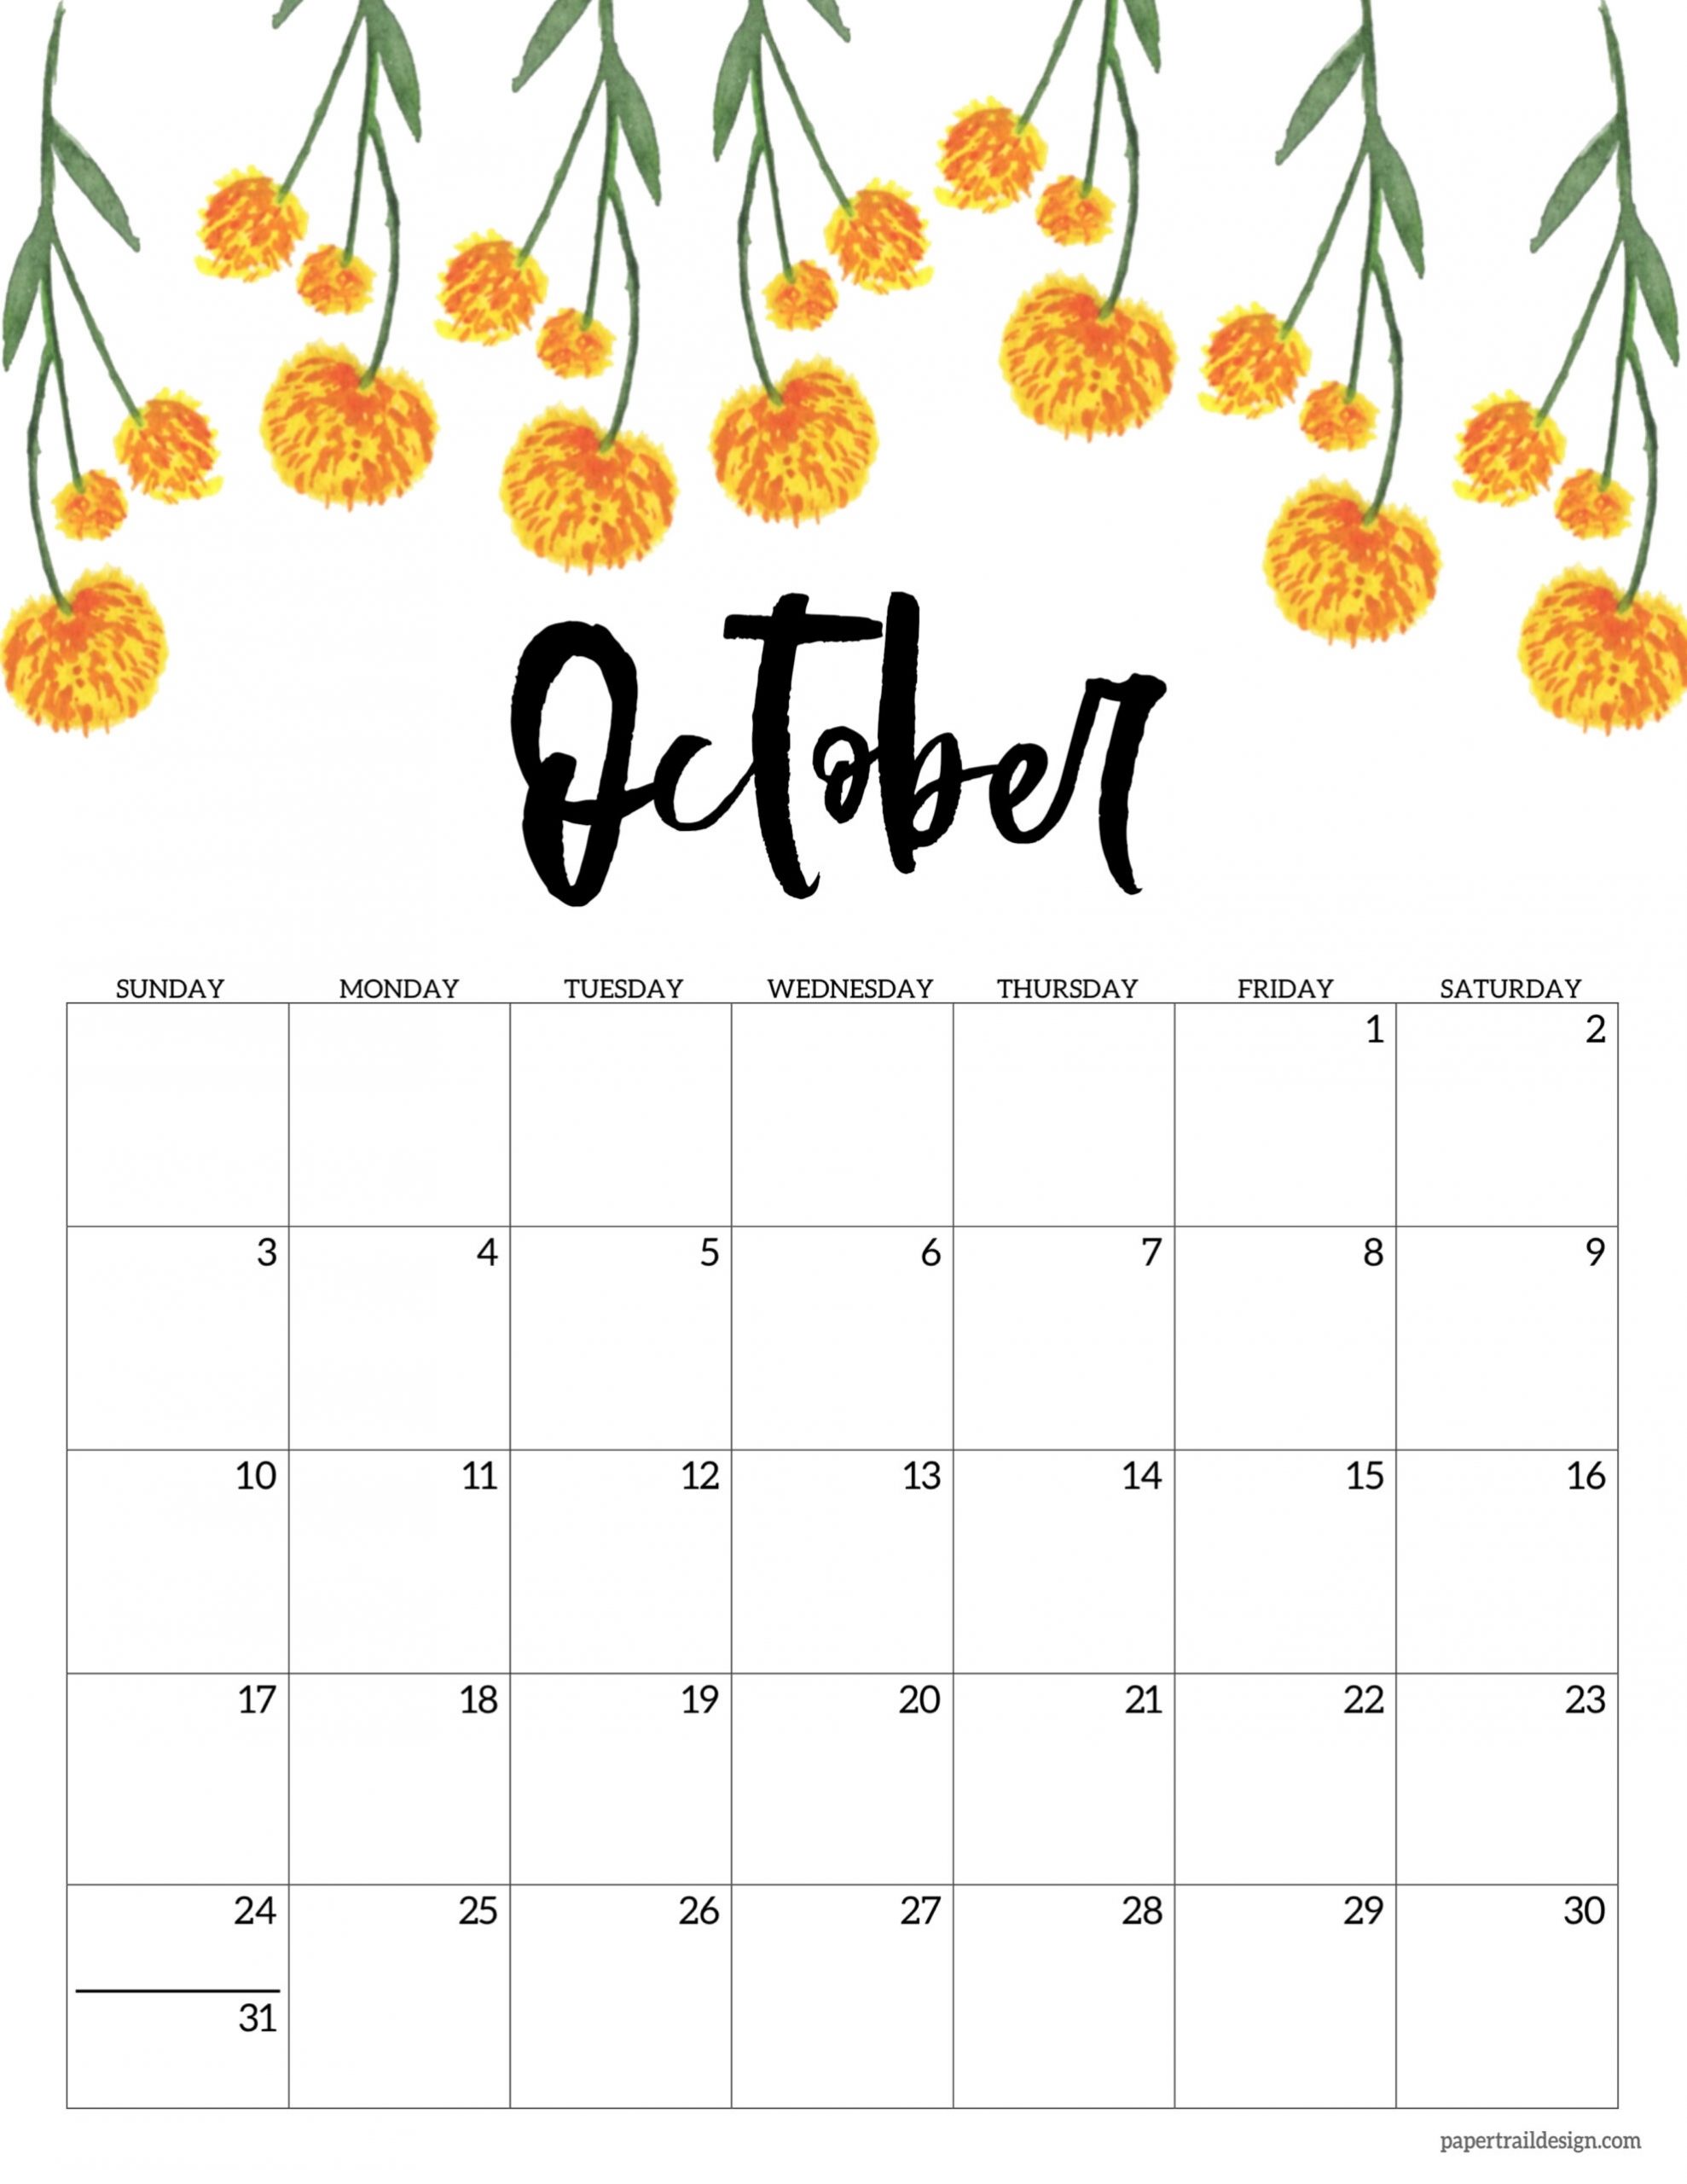 Collect November 2021 Calendar Cute